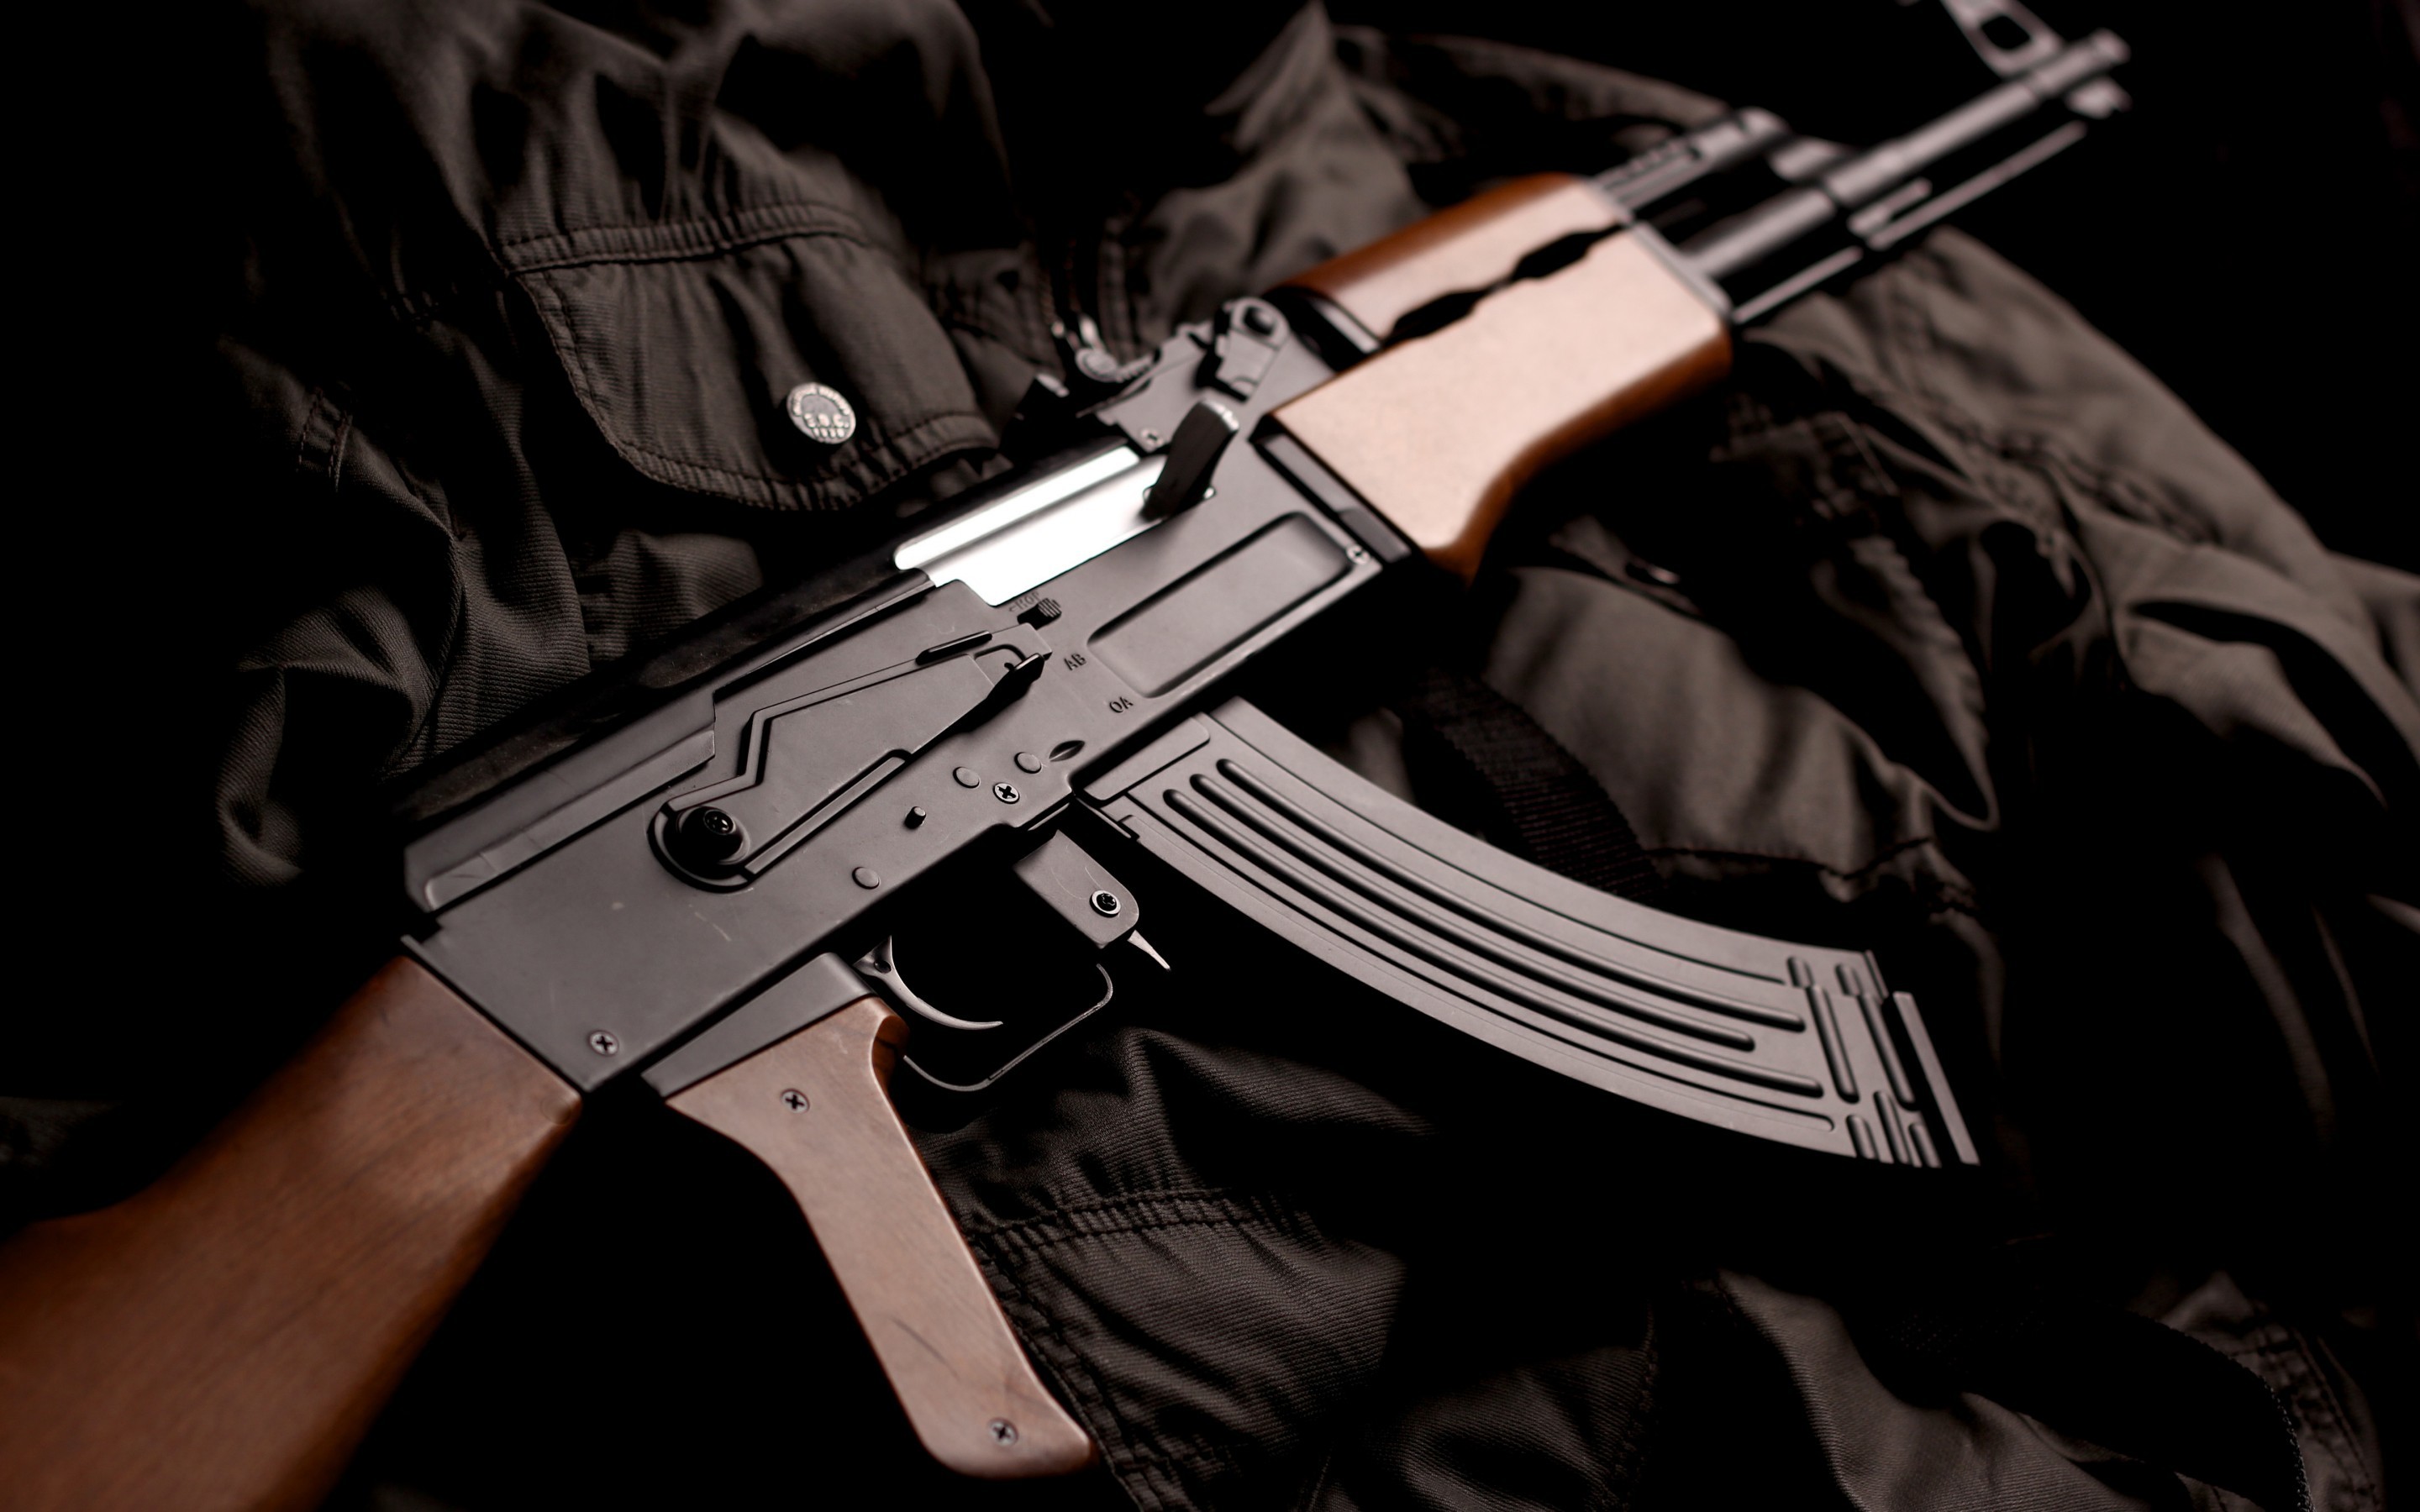 2880x1800 Kalashnikov Gun Wallpaper | kalashnikov gun wallpaper 1080p, kalashnikov gun  wallpaper desktop, kalashnikov gun wallpaper hd, kalashnikov gun wallp…